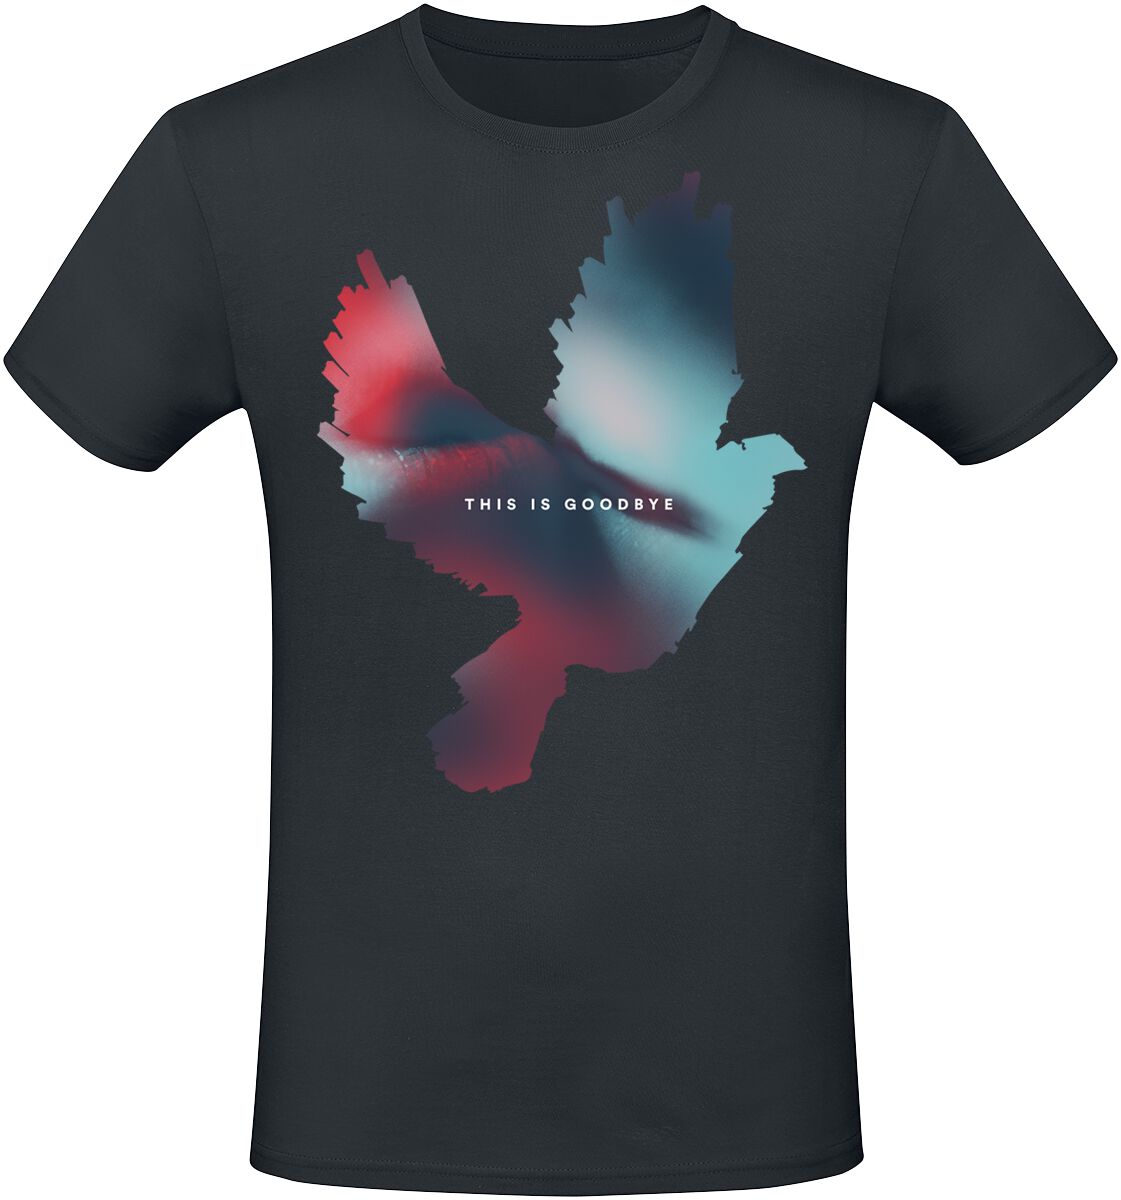 Imminence T-Shirt - This Is Goodbye - XL - für Männer - Größe XL - schwarz  - EMP exklusives Merchandise!